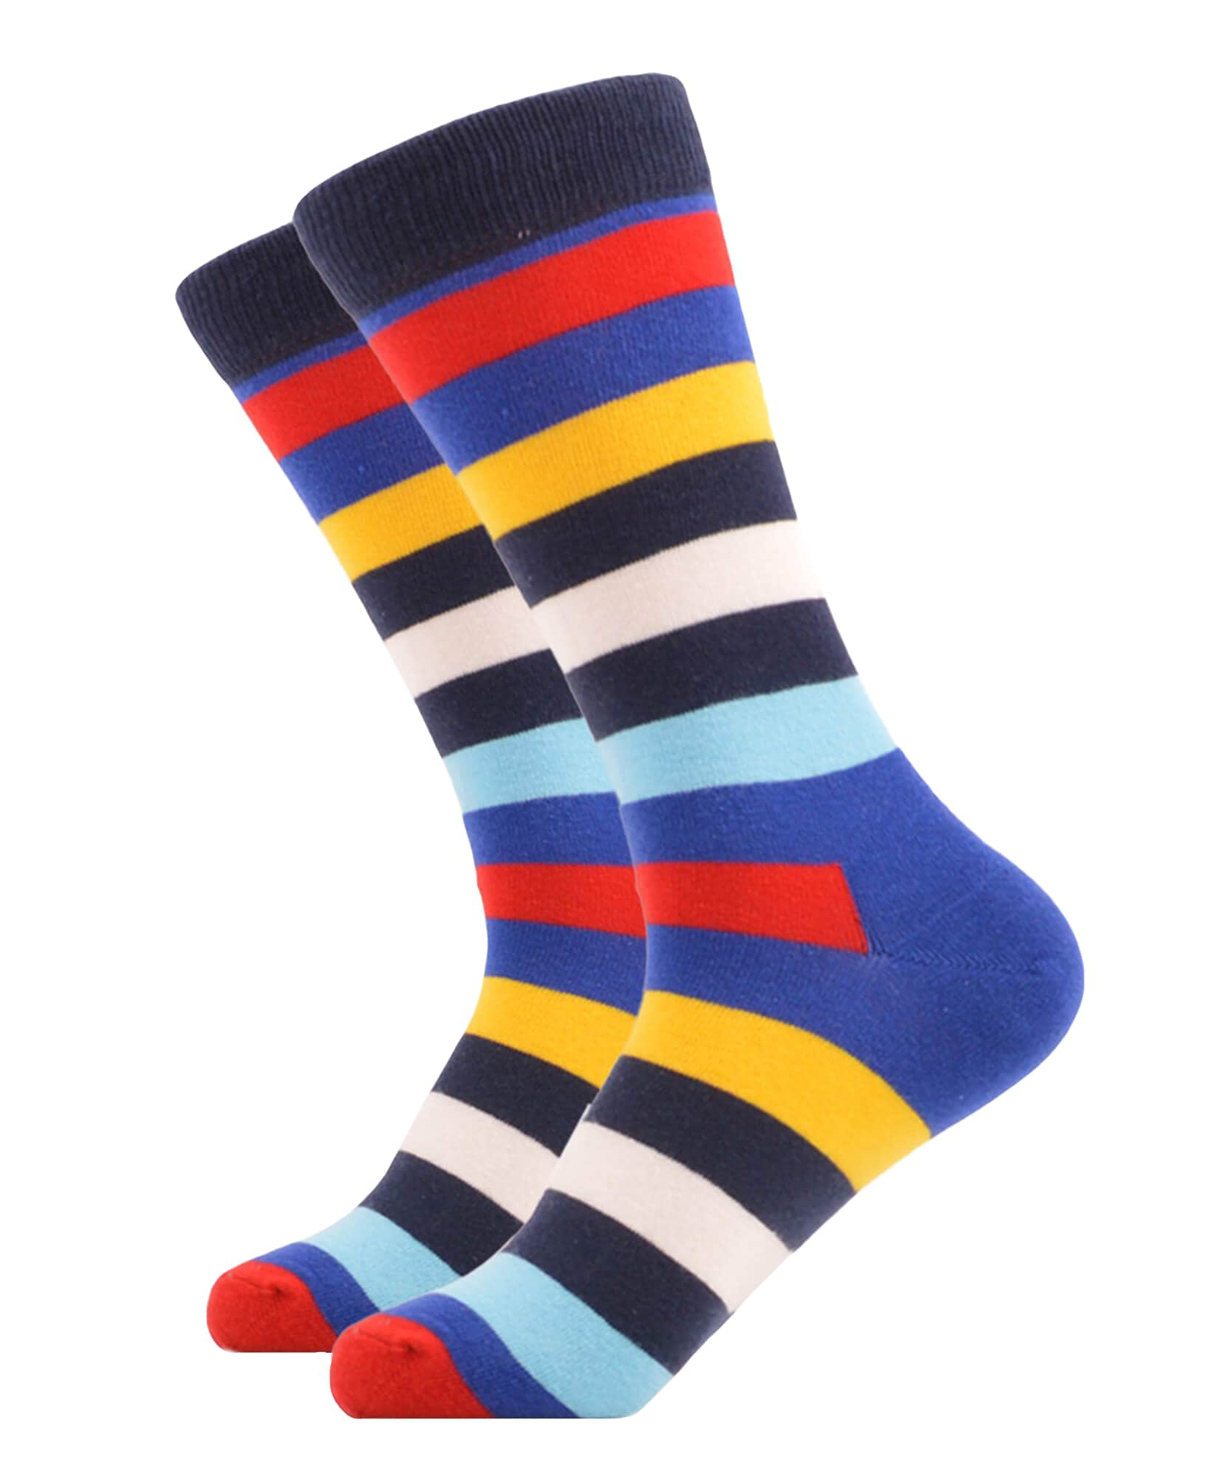 Գուլպաներ «Zeal Socks» գույներ №7